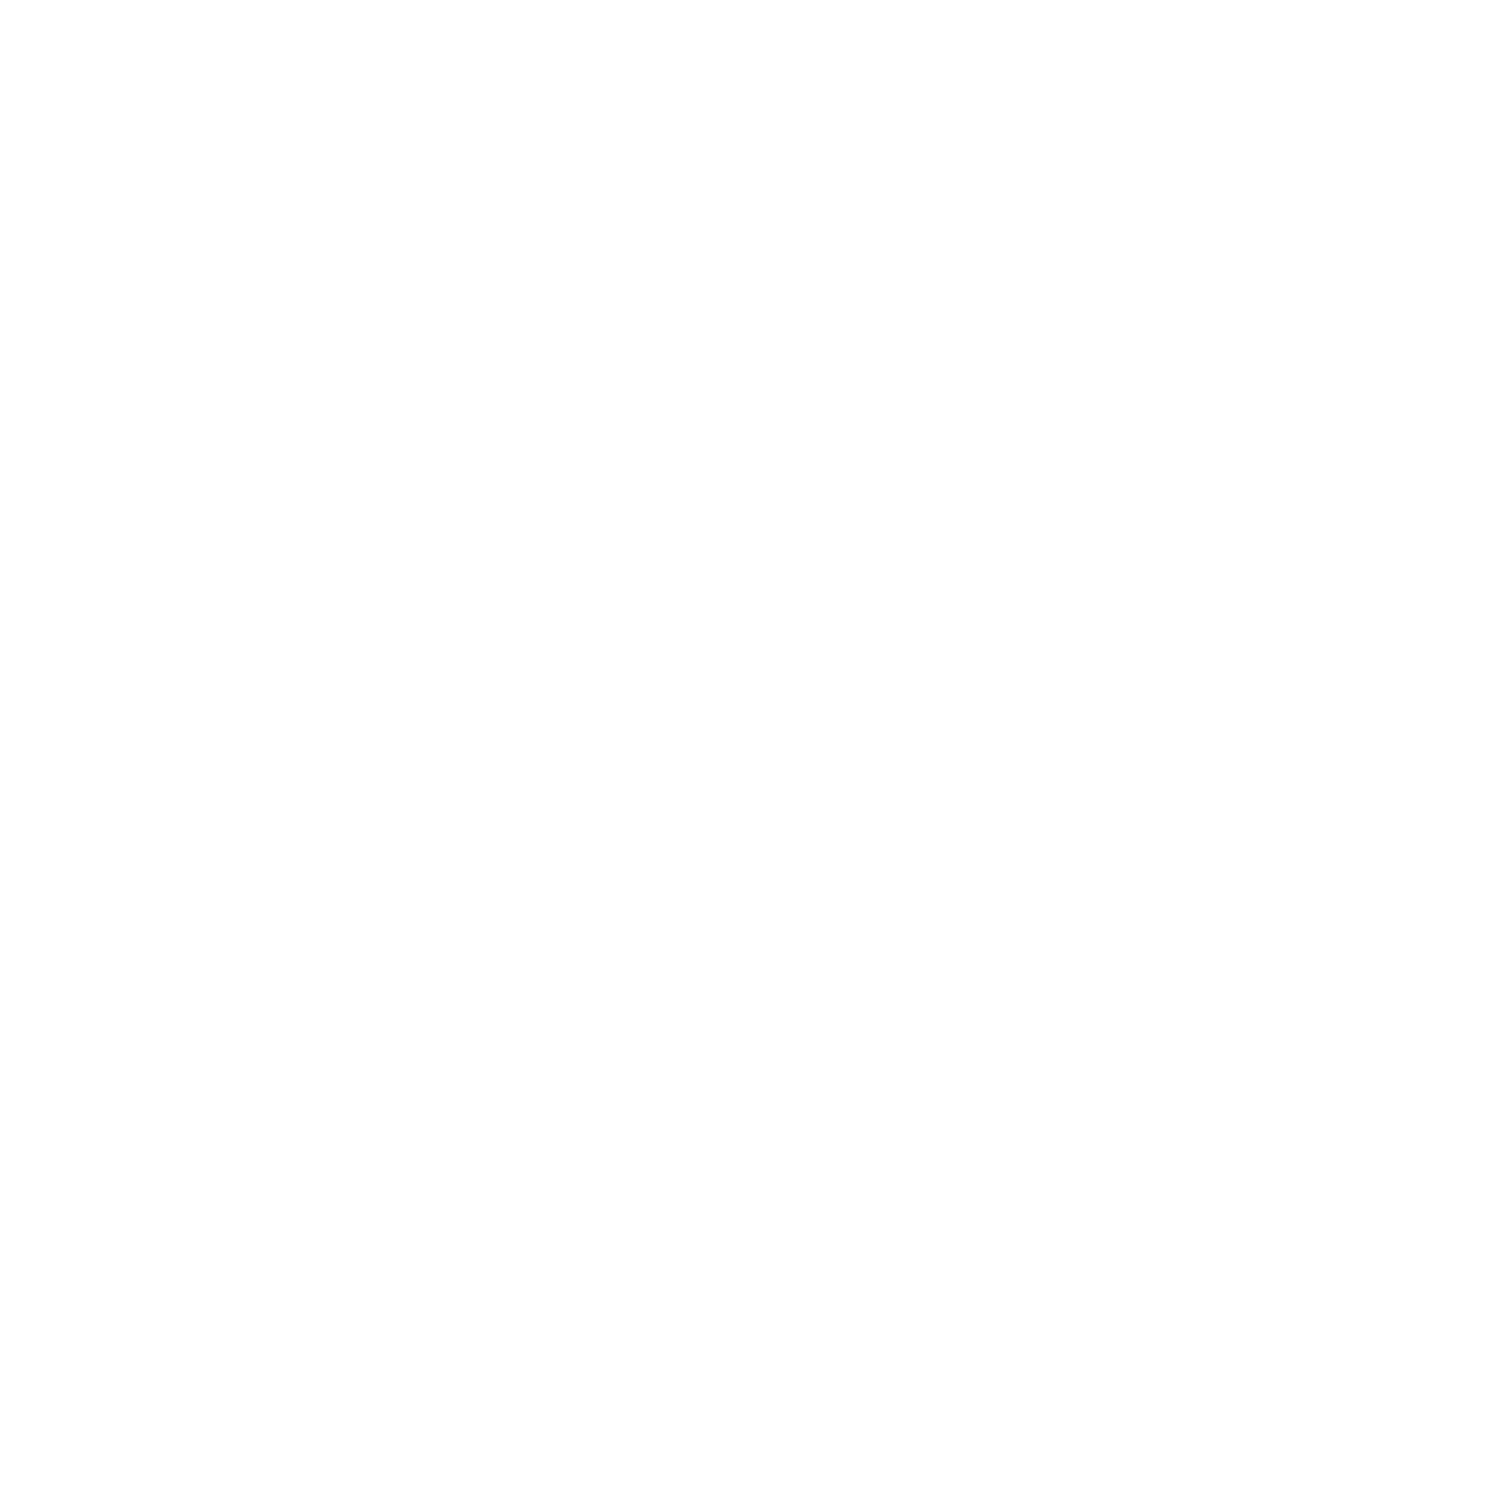 SJS Executive Coaching